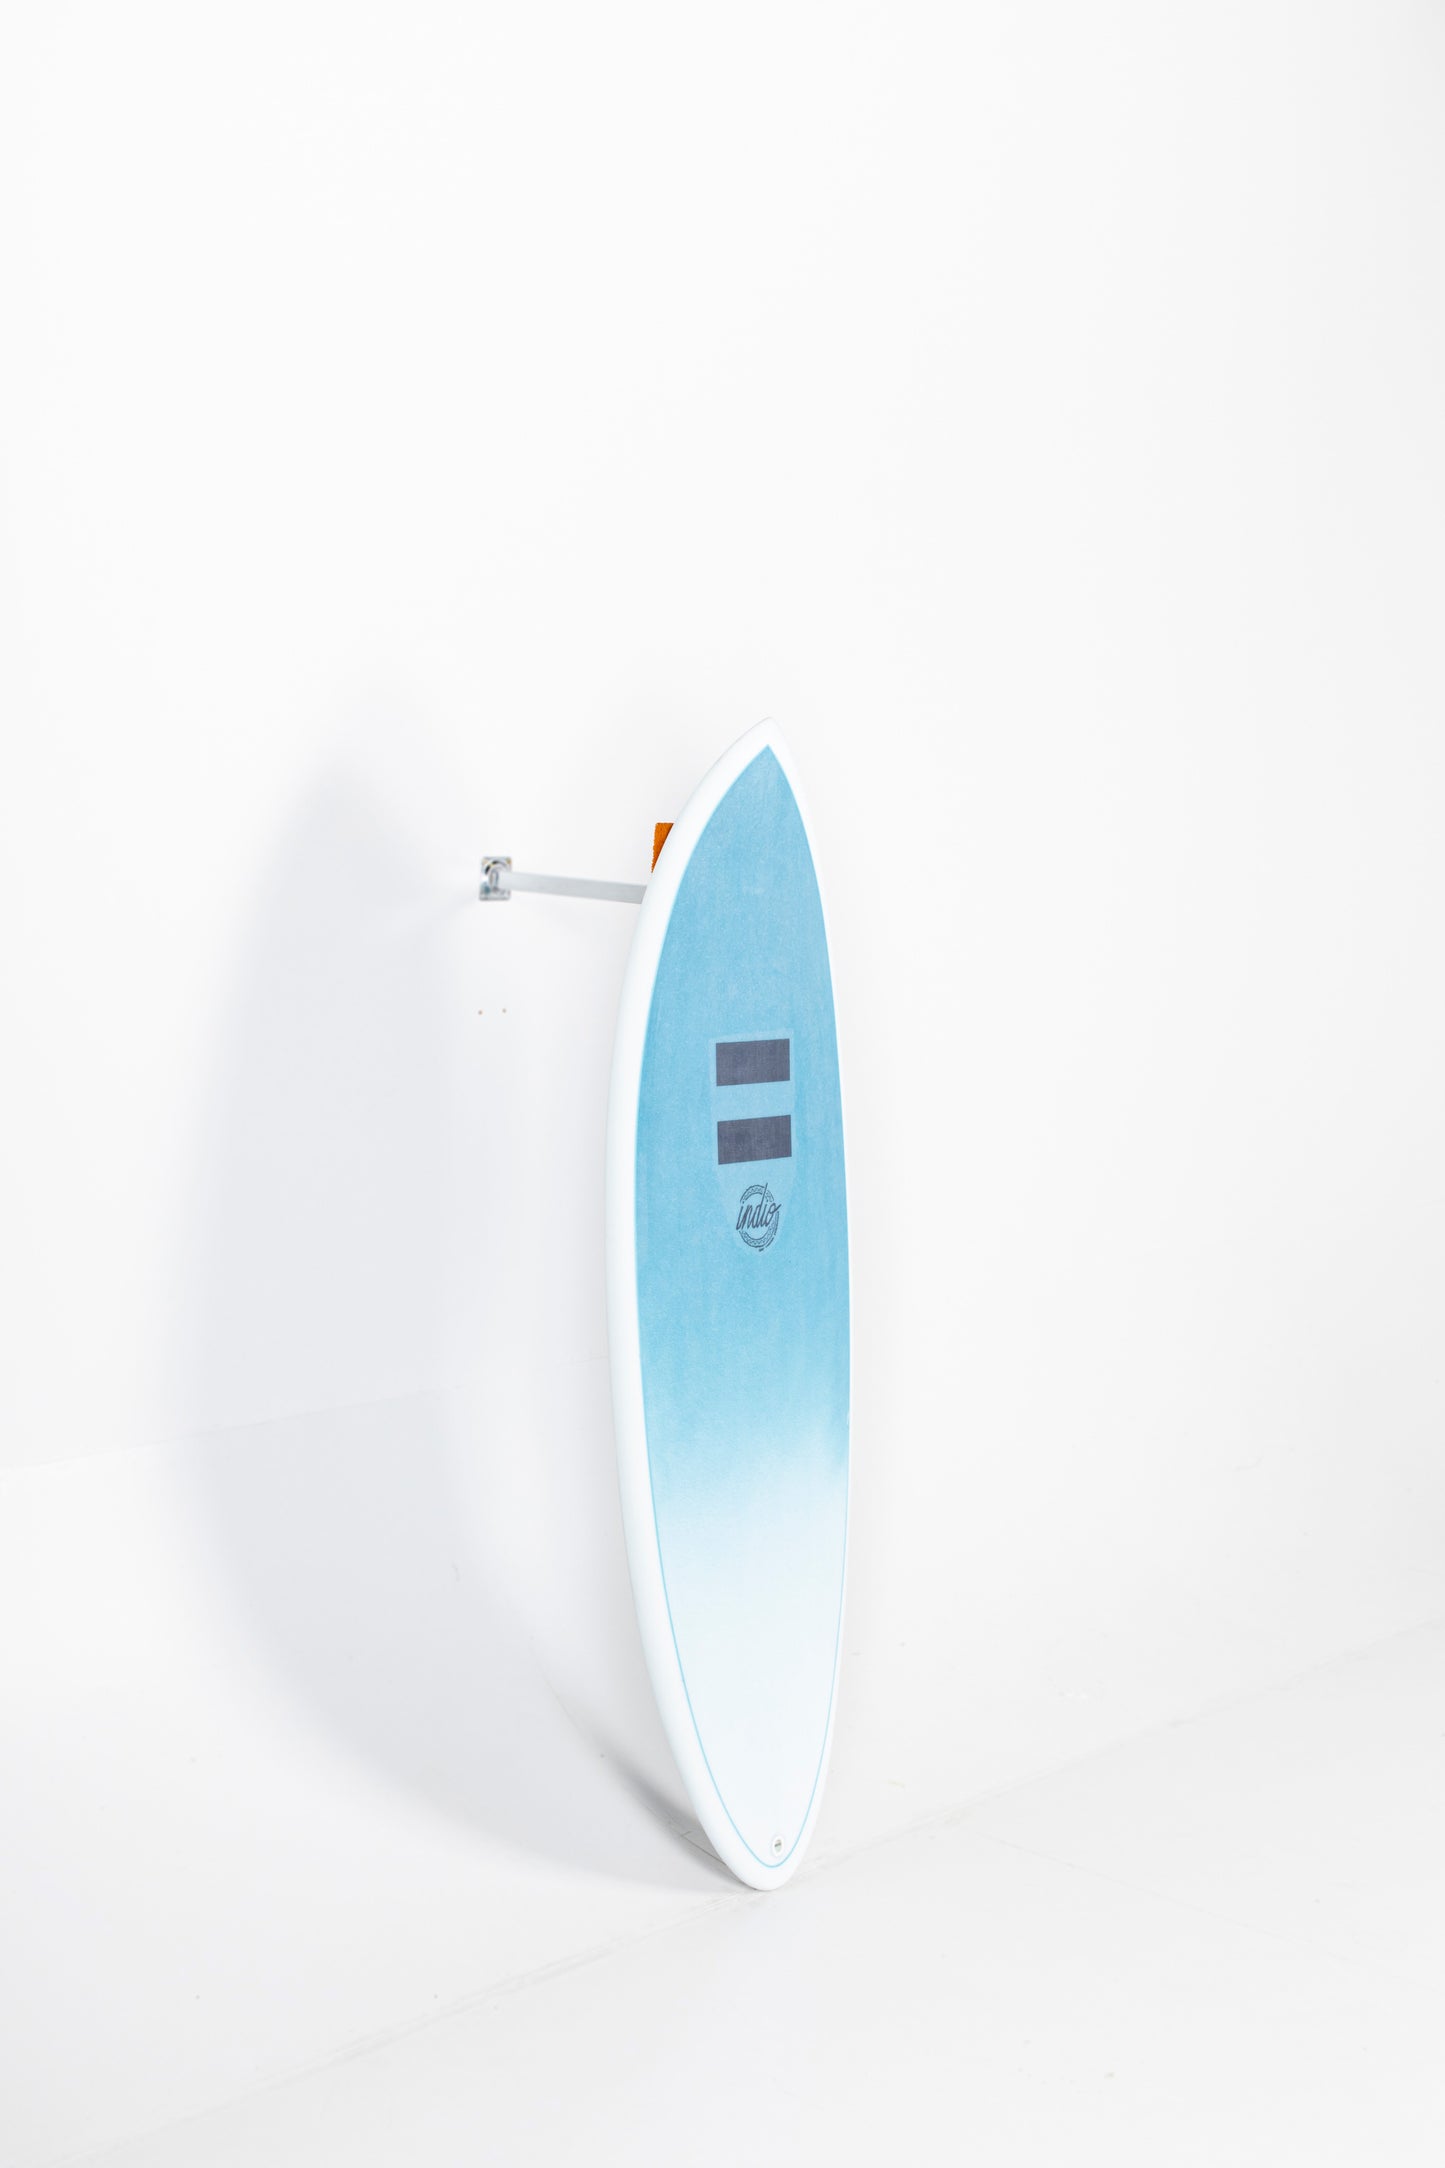 
                  
                    Pukas-Surf-Shop-INDIO-Endurance-Racer-4'11'-Aqua-Blue-Carbon
                  
                